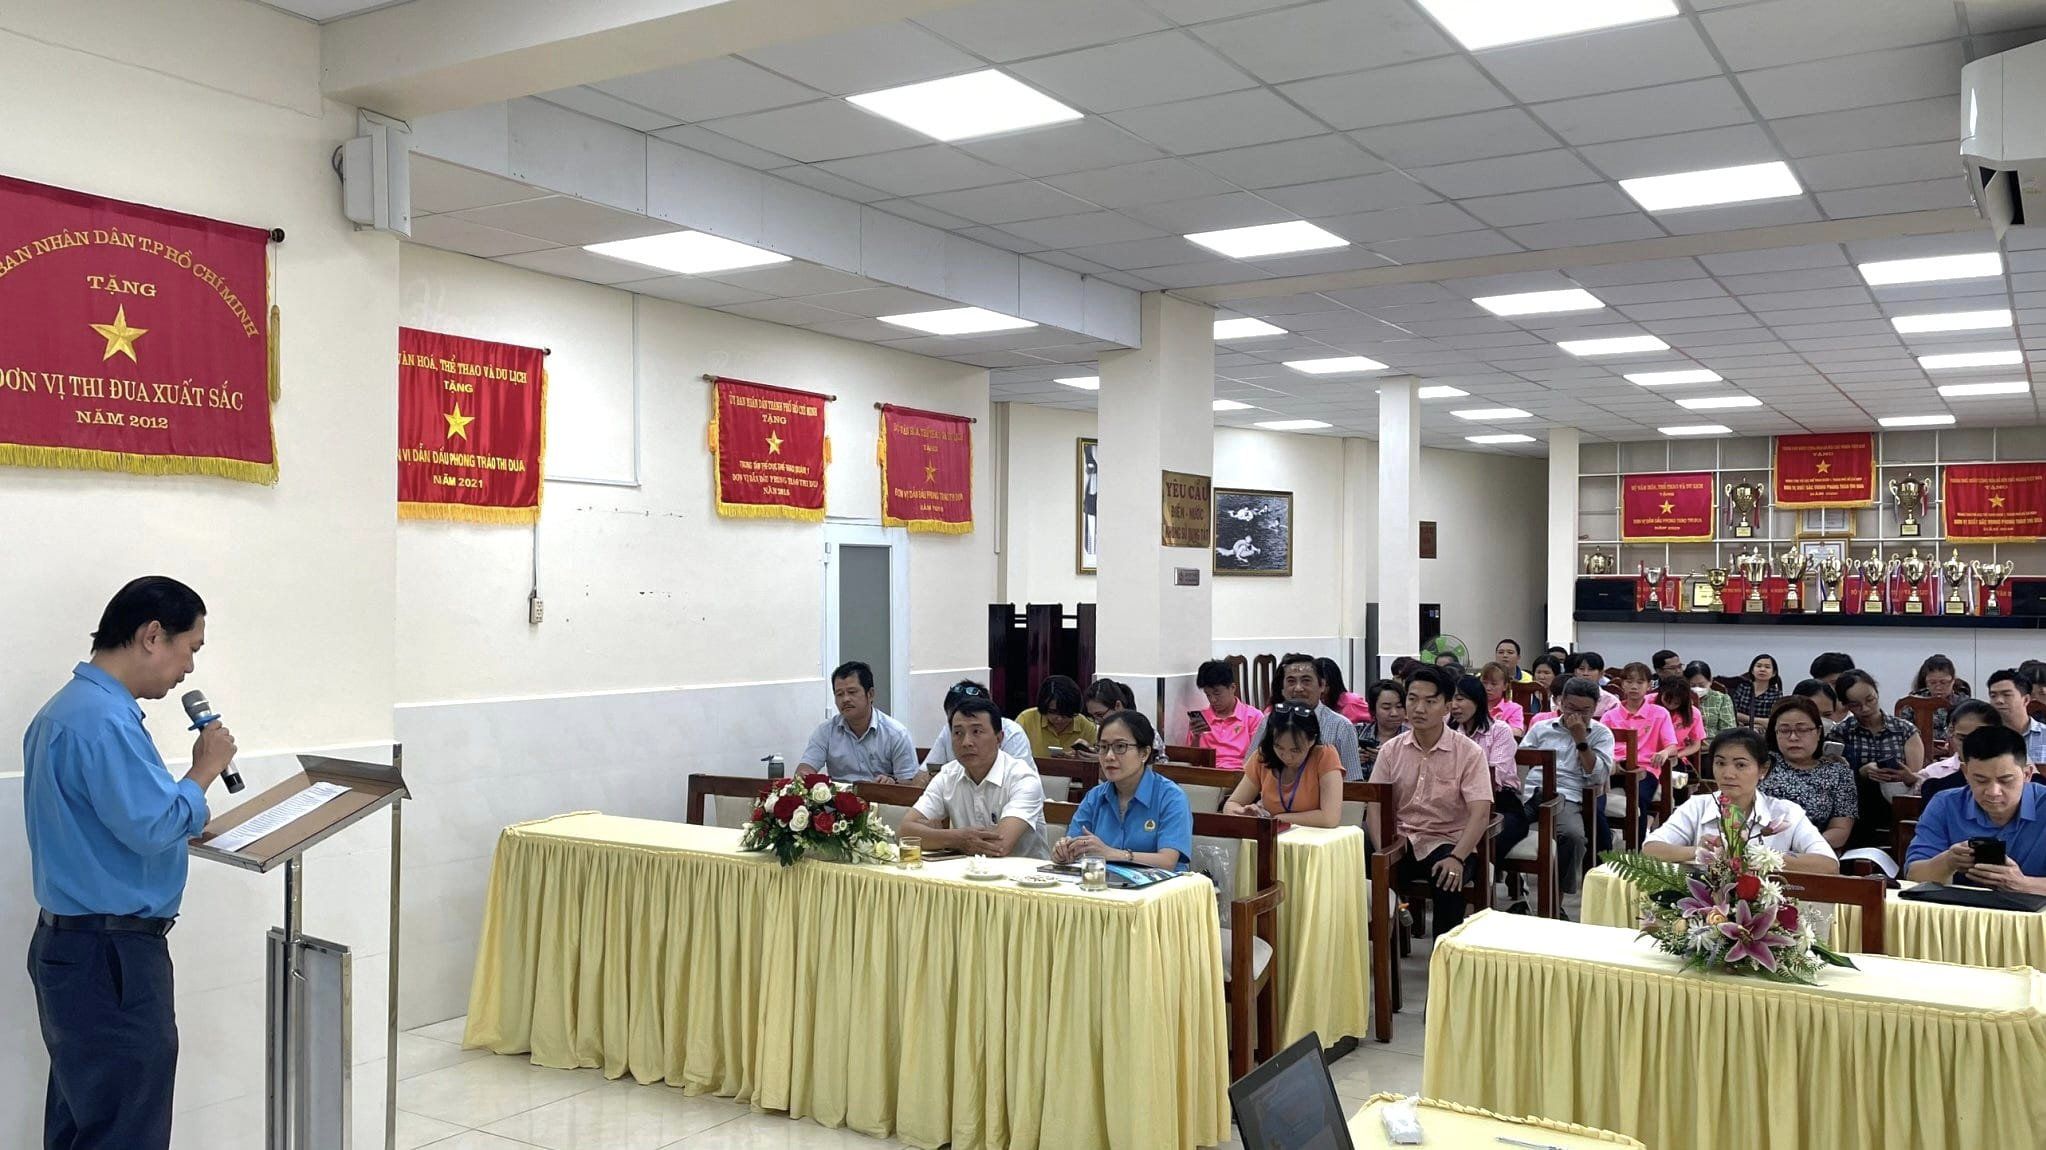 Hội thi trực tuyến "Công đoàn thành phố Hồ Chí Minh - Niềm tin của người lao động " Đợt 1 "Vững bước dưới cờ Đảng"